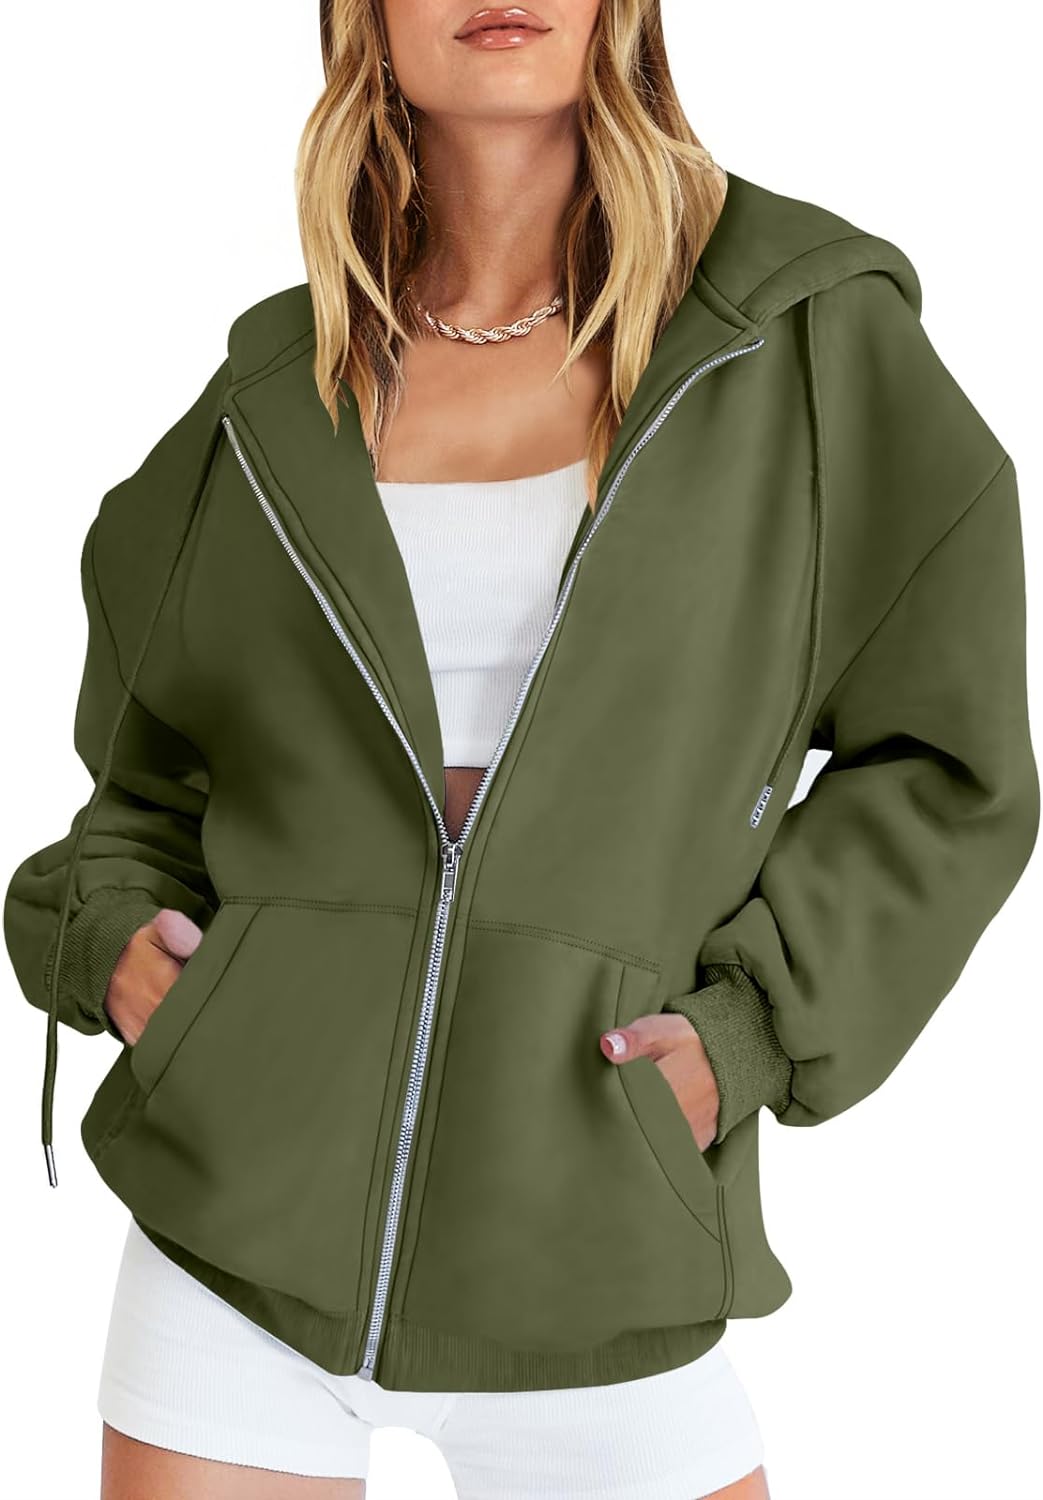 Caracilia Women's Zip Up Hoodies Teen Girls Oversized Sweatshirt